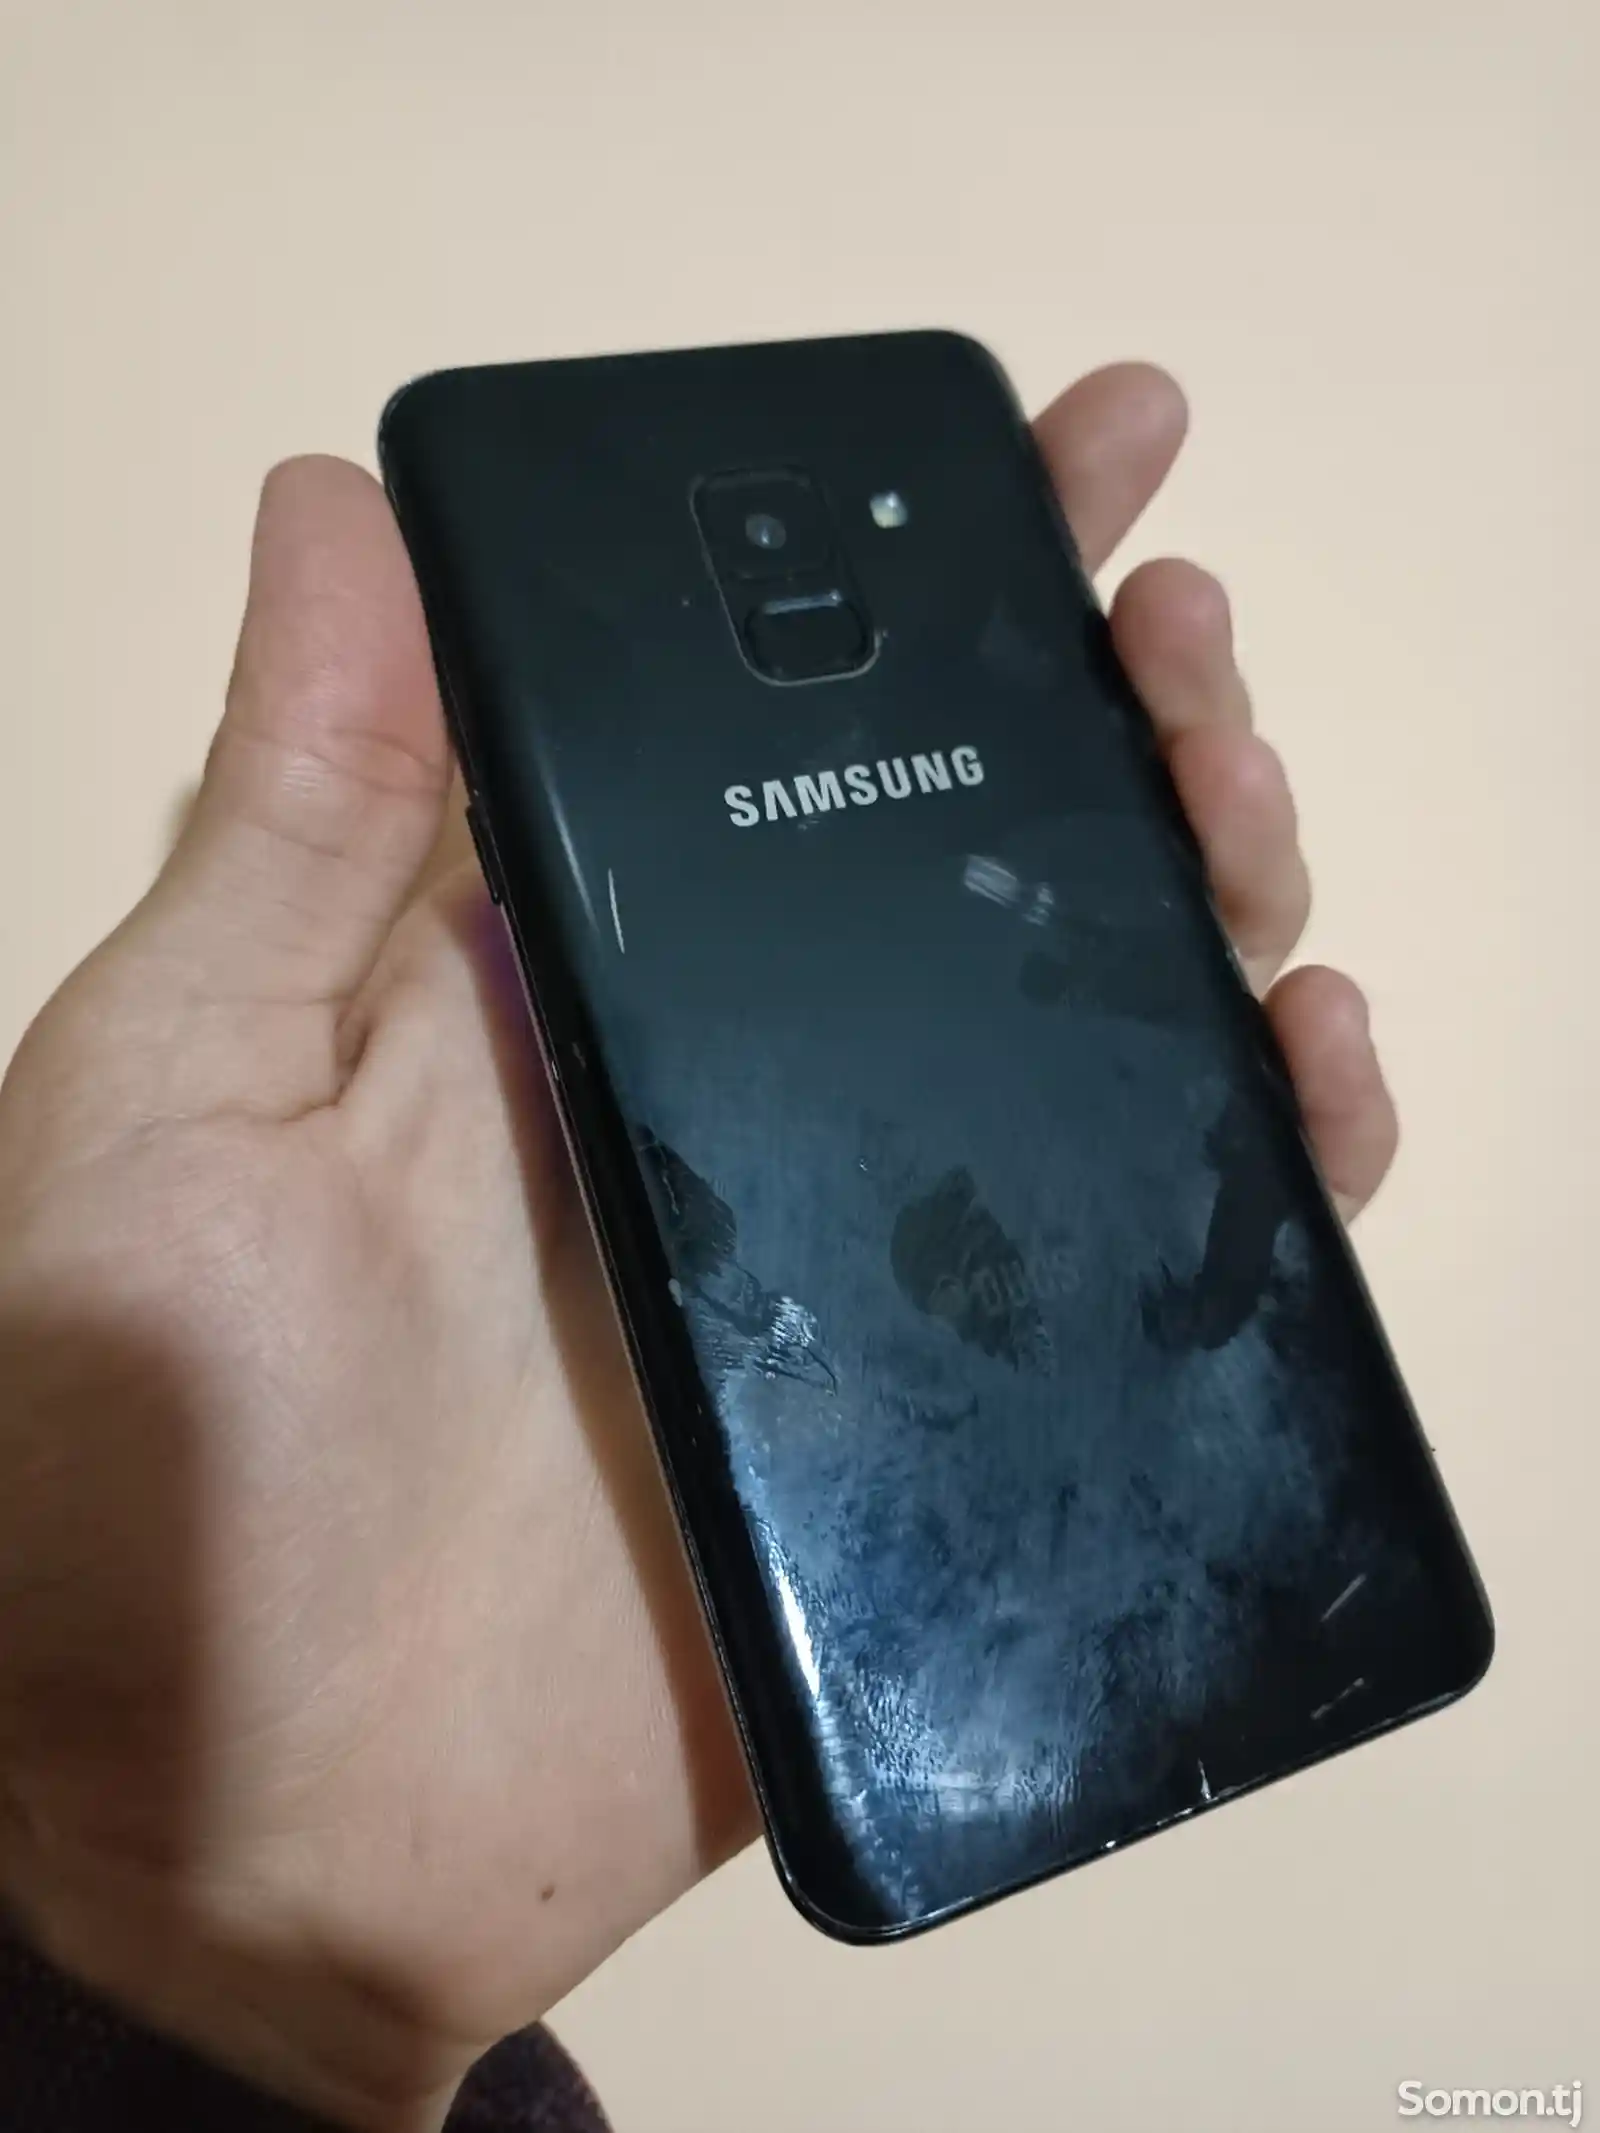 Samsung Galaxy A8, 2018-2